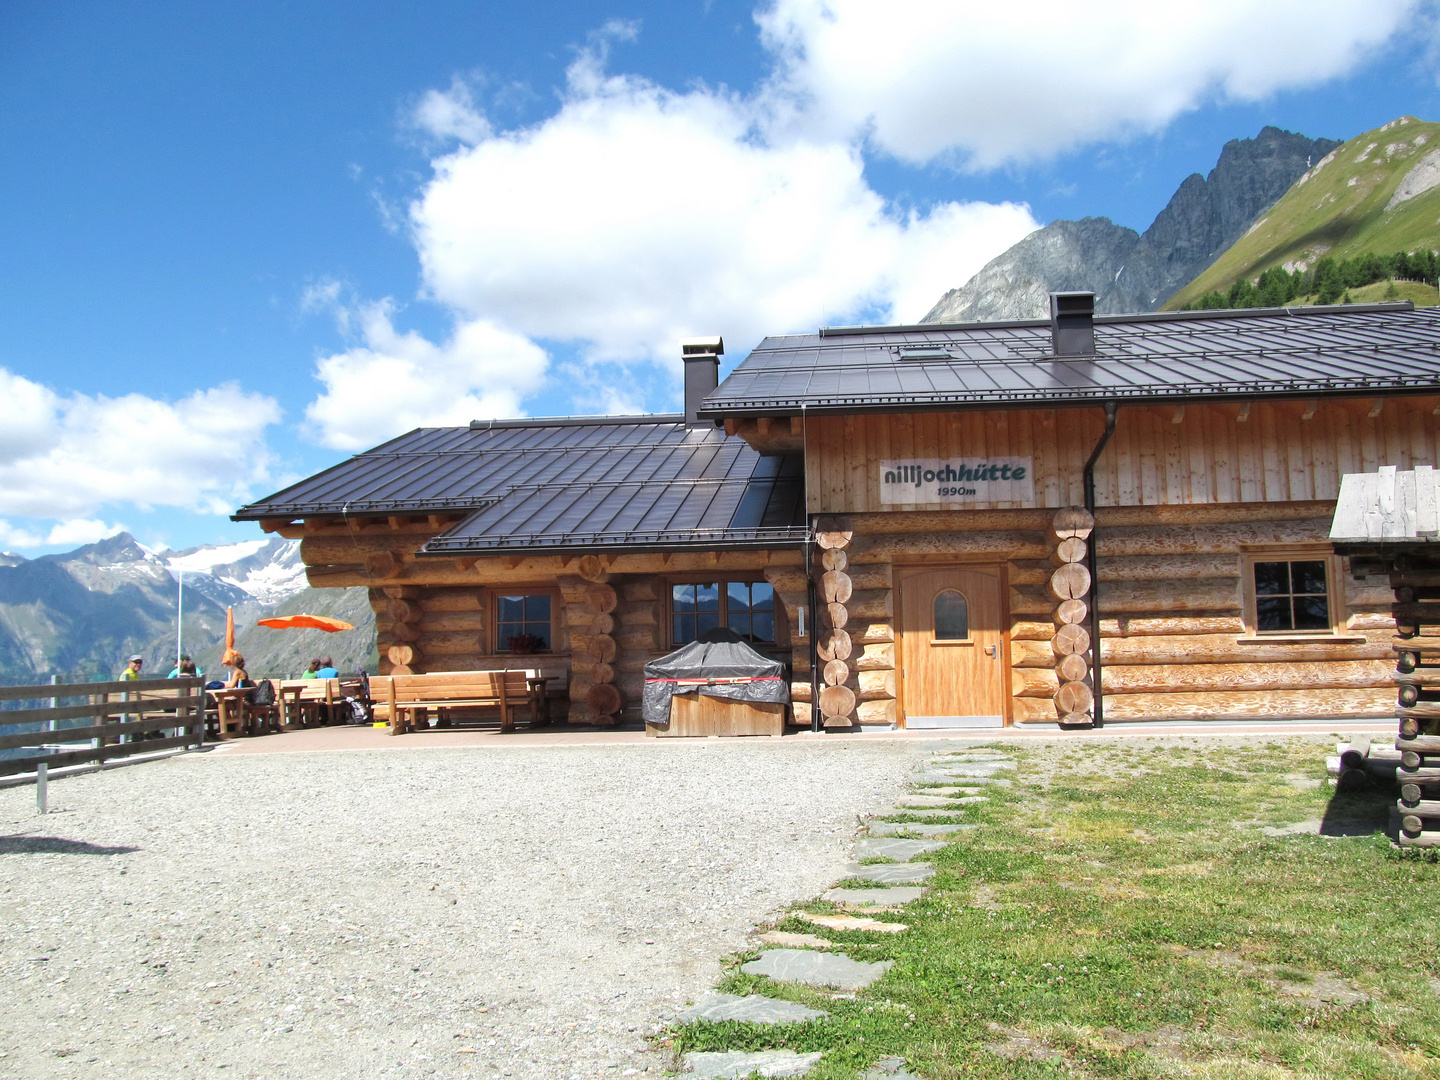 Nilljoch Hütte